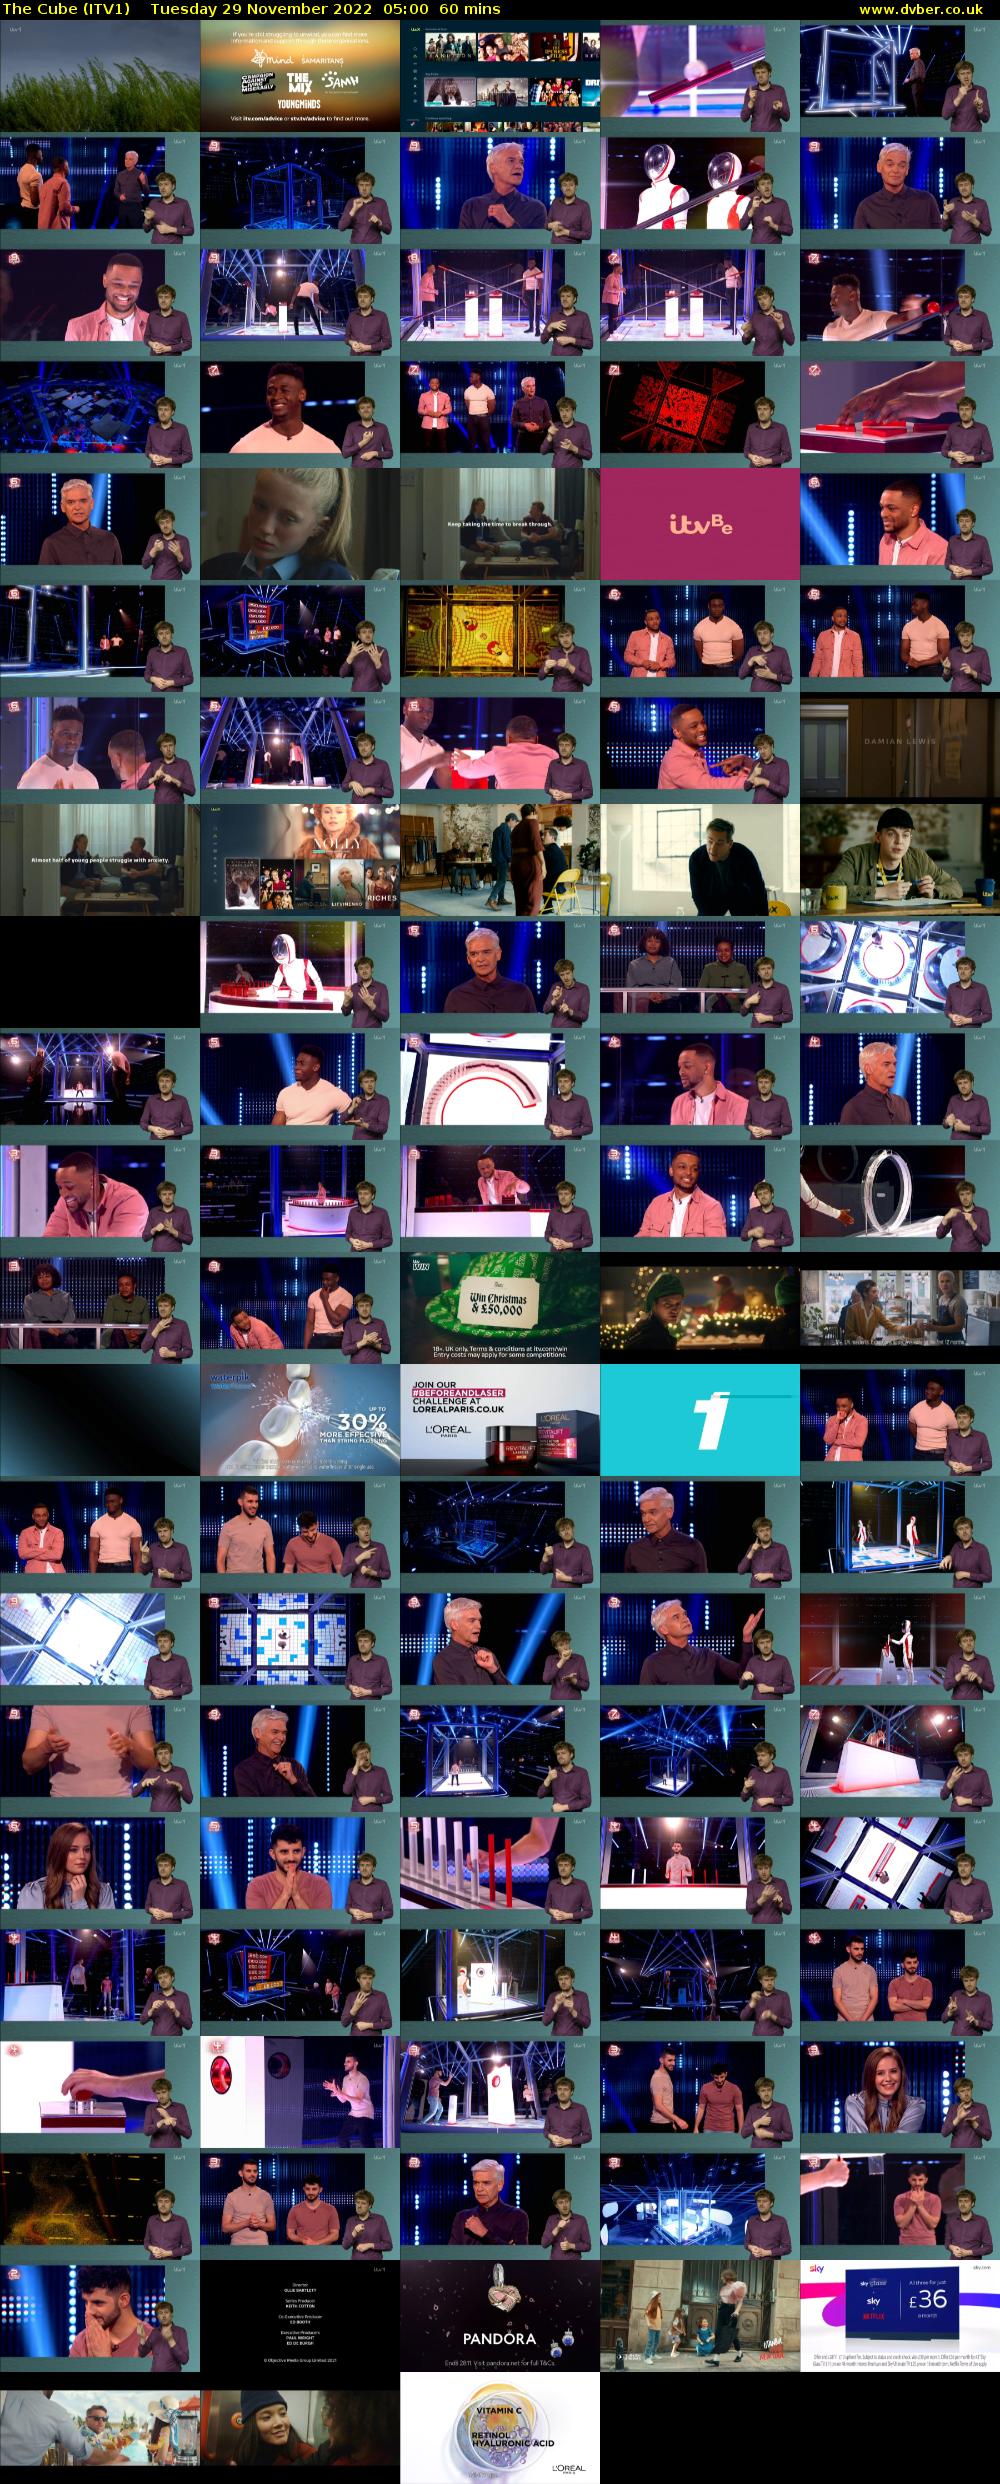 The Cube (ITV1) Tuesday 29 November 2022 05:00 - 06:00